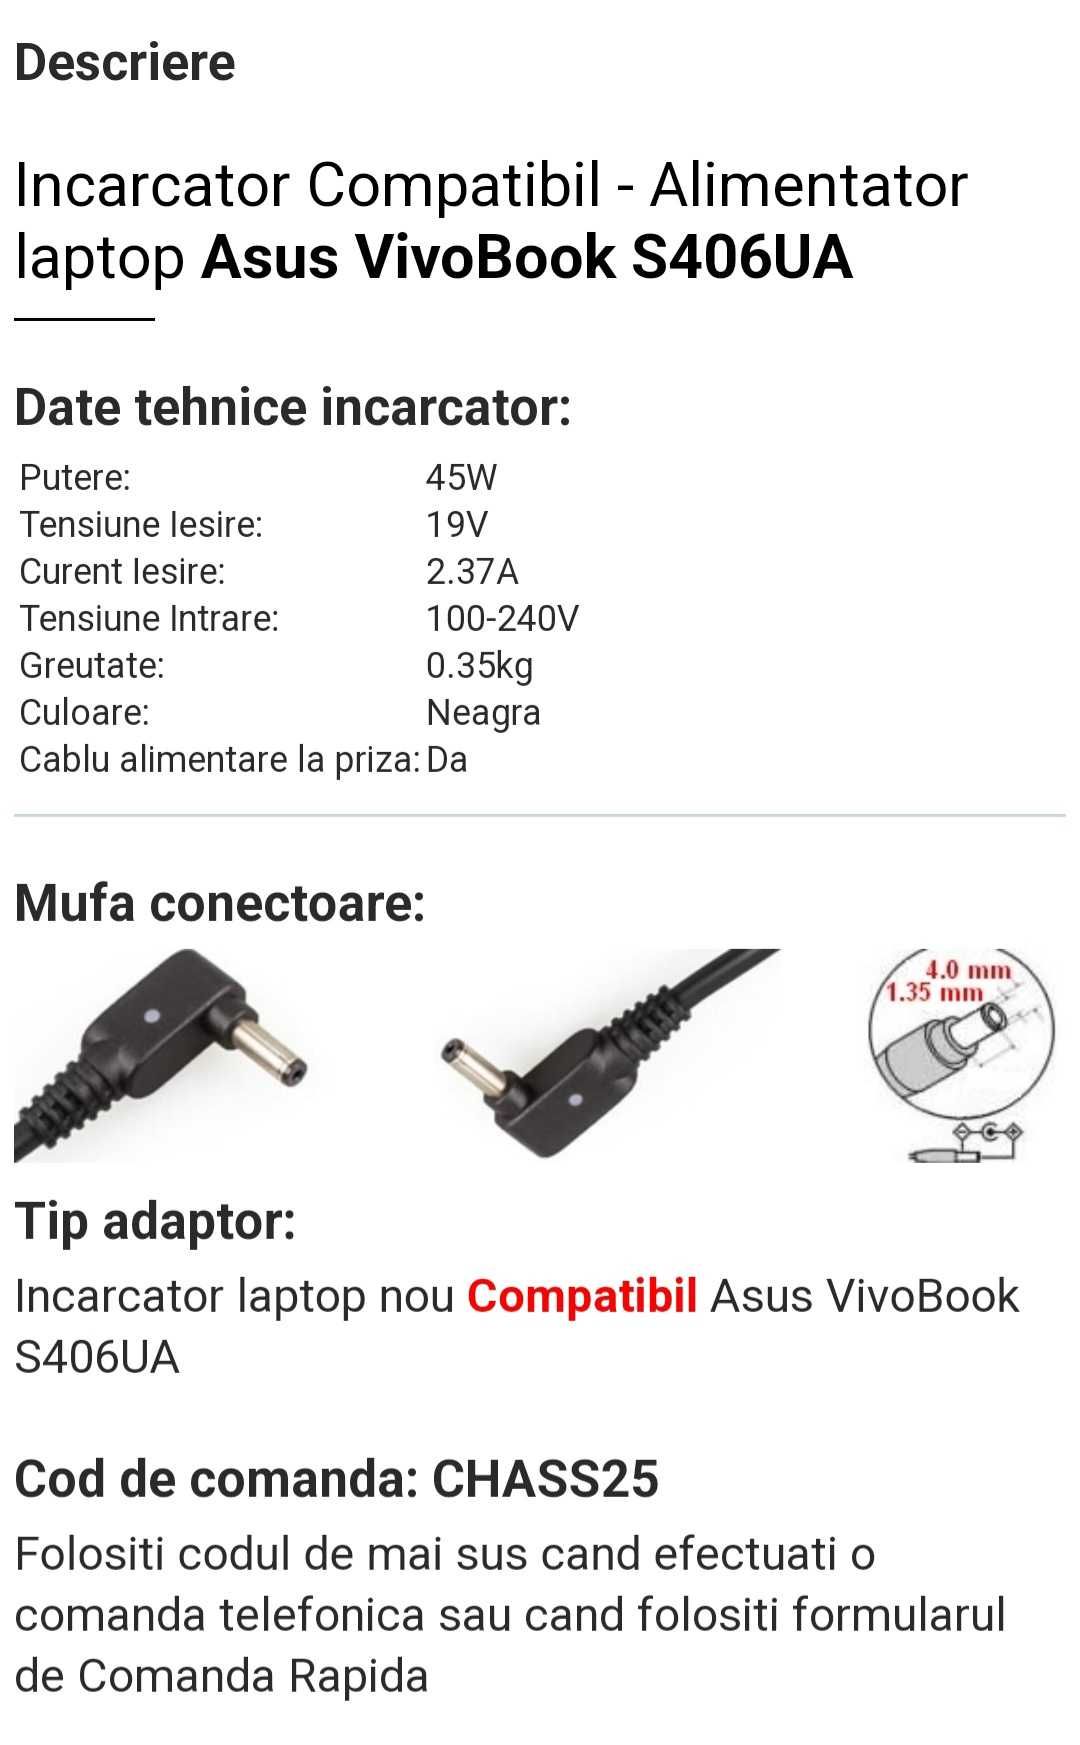 Încărcător Asus VivoBook S406UA Compatibil